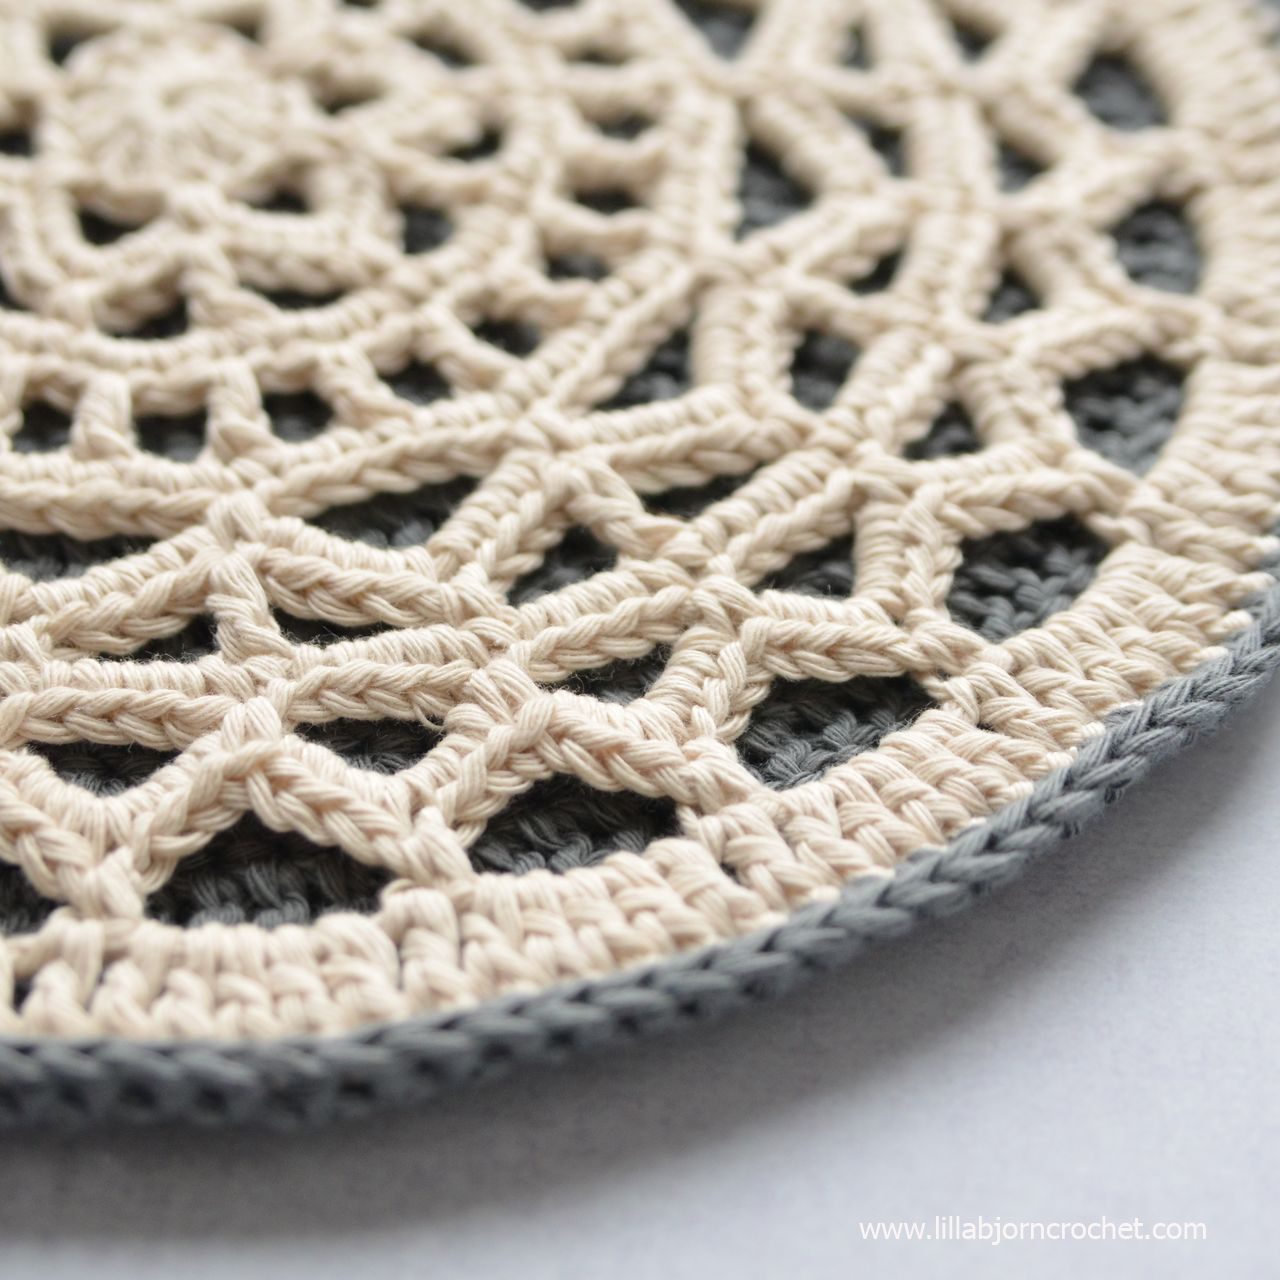 Geometric Mandala - easy crochet pattern by www.lillabjorncrochet.com